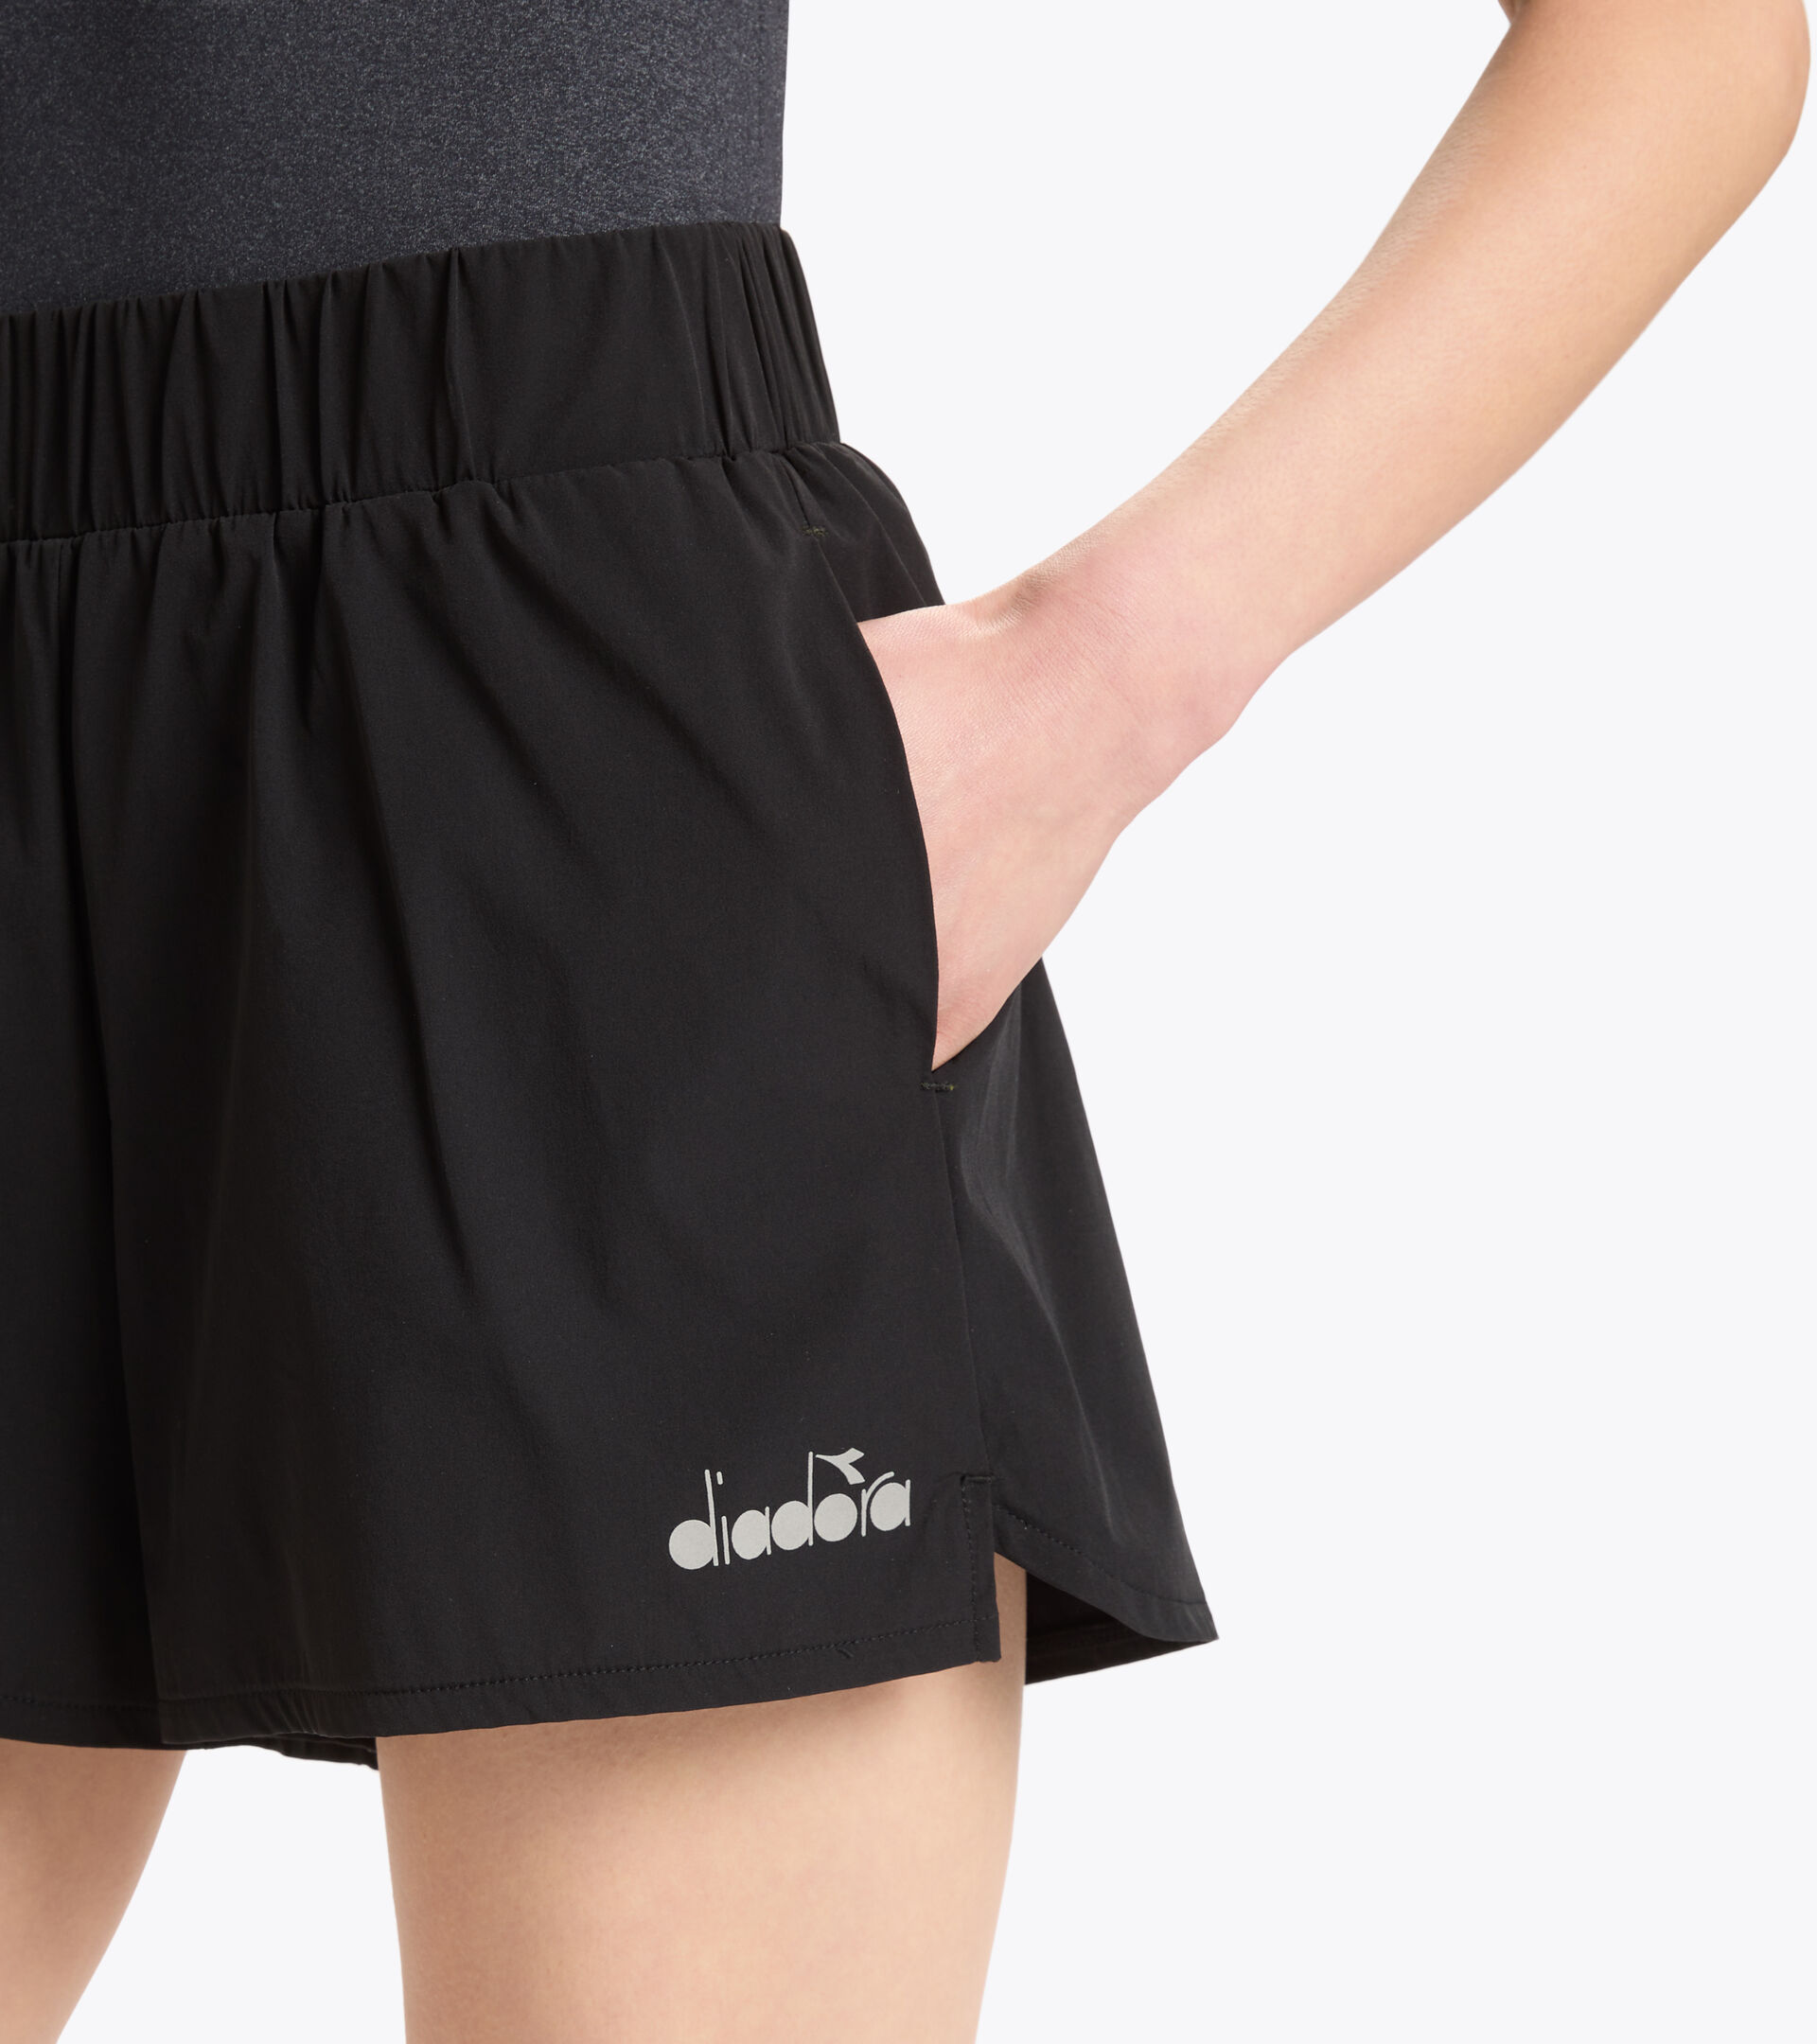 Pantalones cortos para correr - Diadora Tienda Online